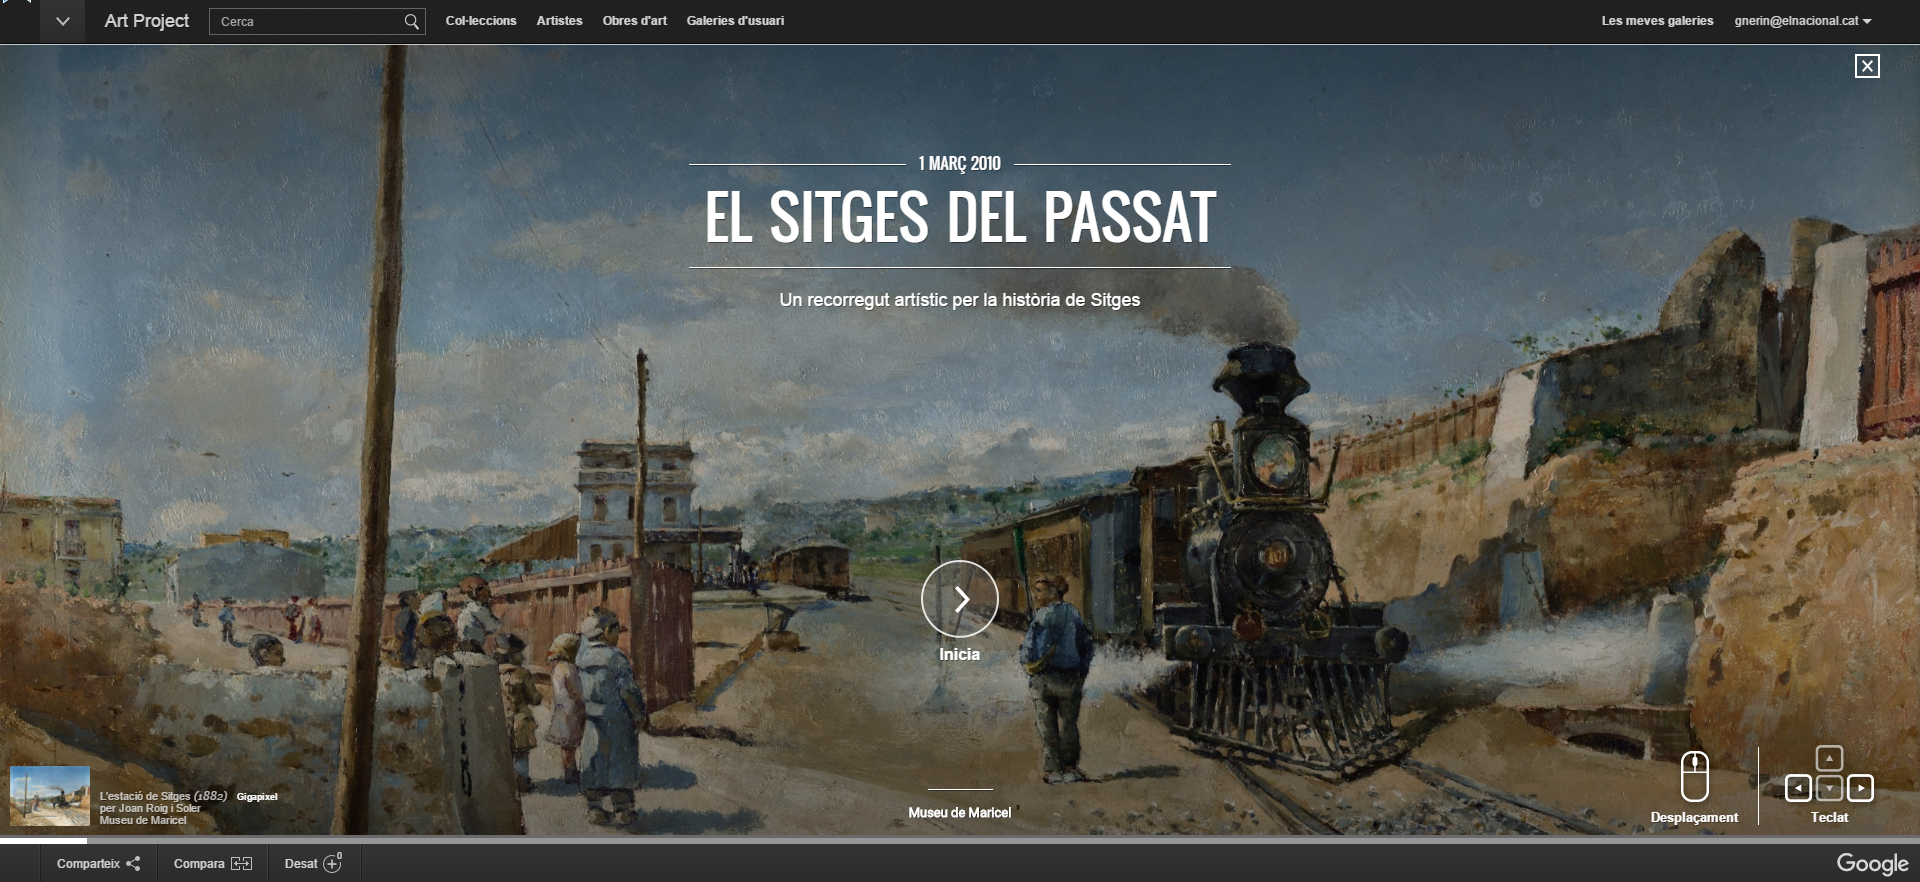 Visita 12 museos catalanes, sin salir de casa